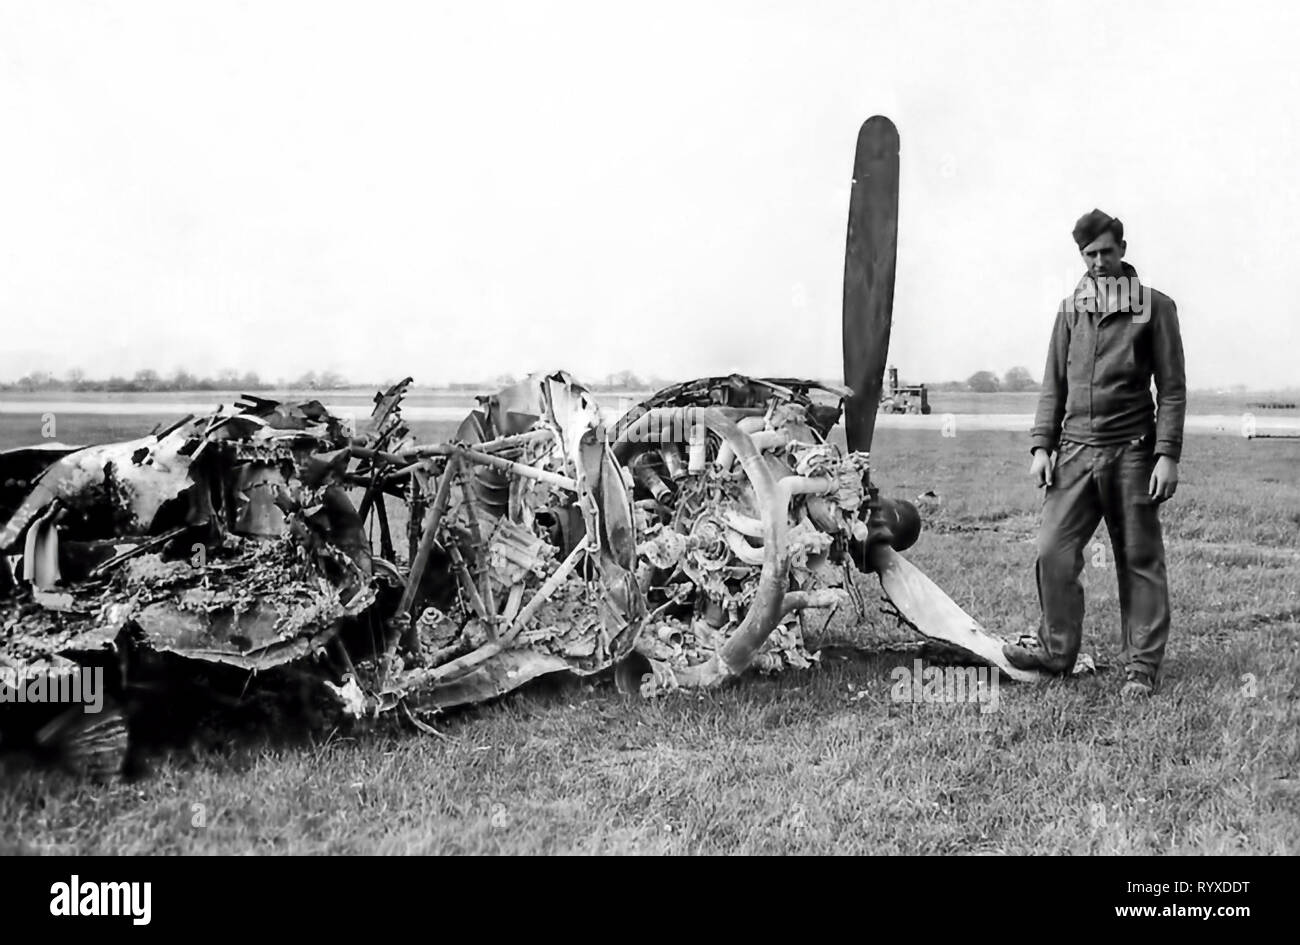 Les photographies et les souvenirs personnels de combats américains pendant la Seconde Guerre mondiale. Dommages à l'aéronef et de débris. Banque D'Images